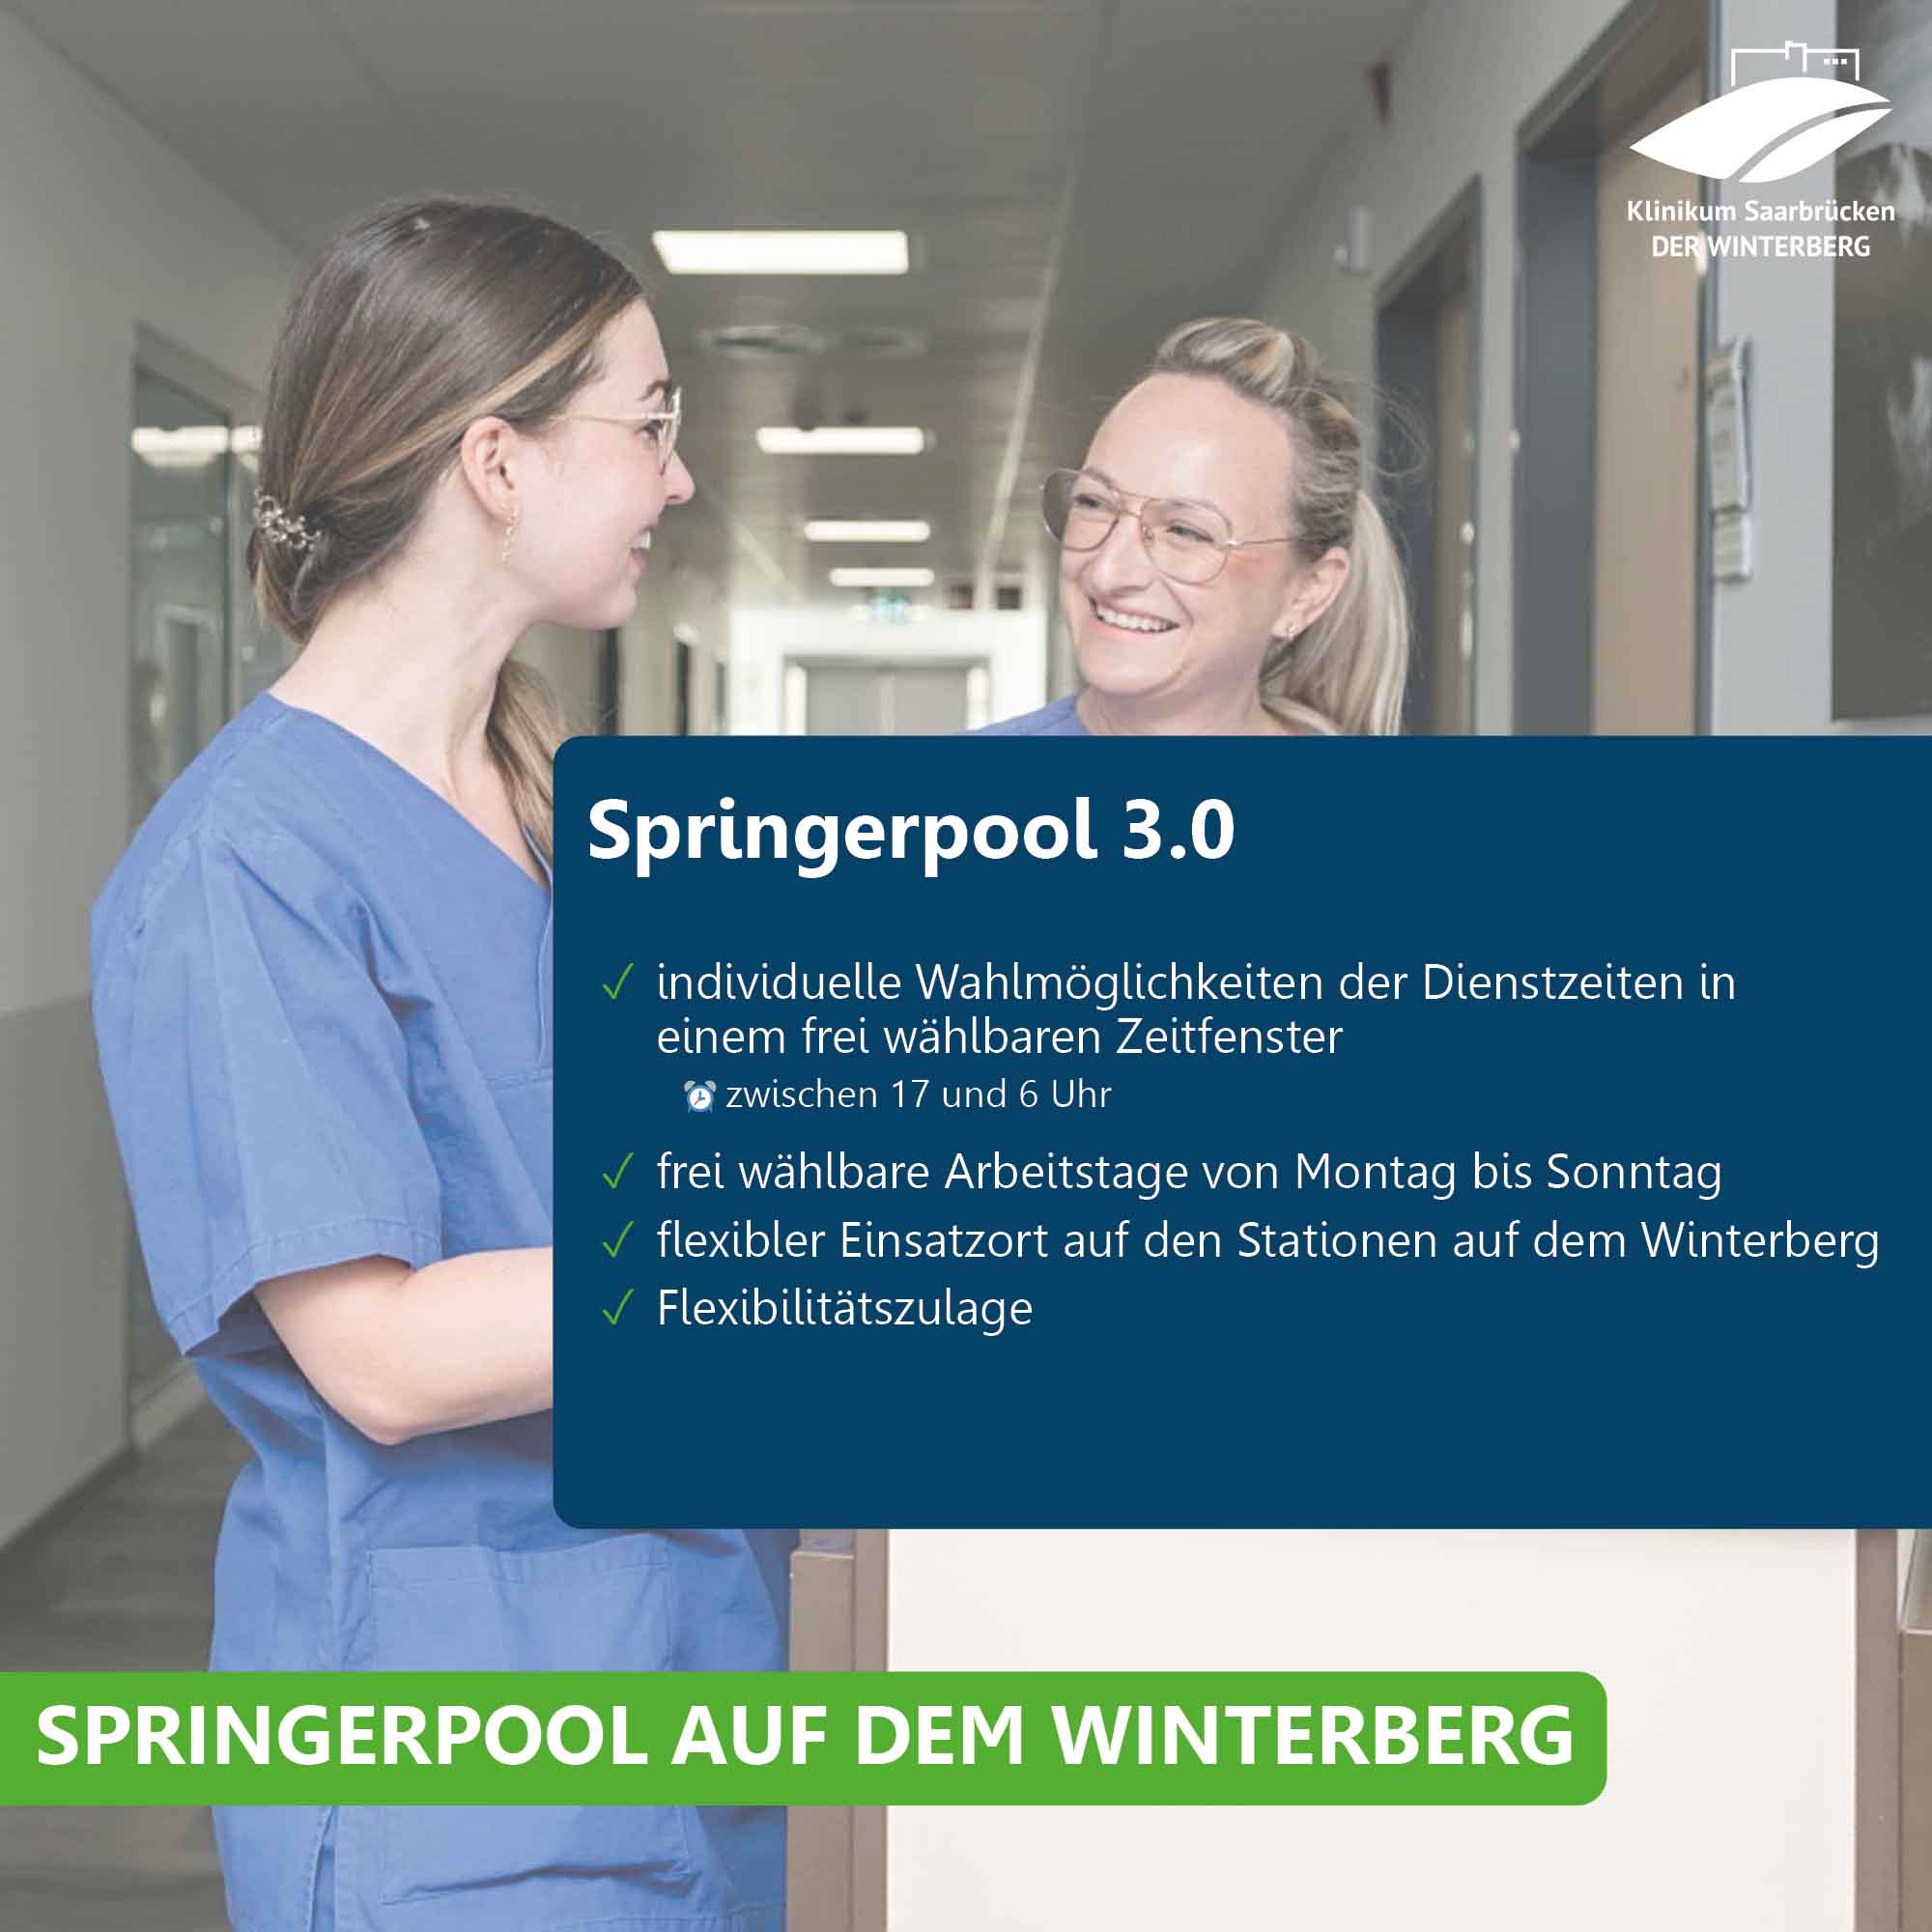 Pflegekräfte im Klinikum Saarbrücken und Übersicht über das Angebot im Springerpool 3.0